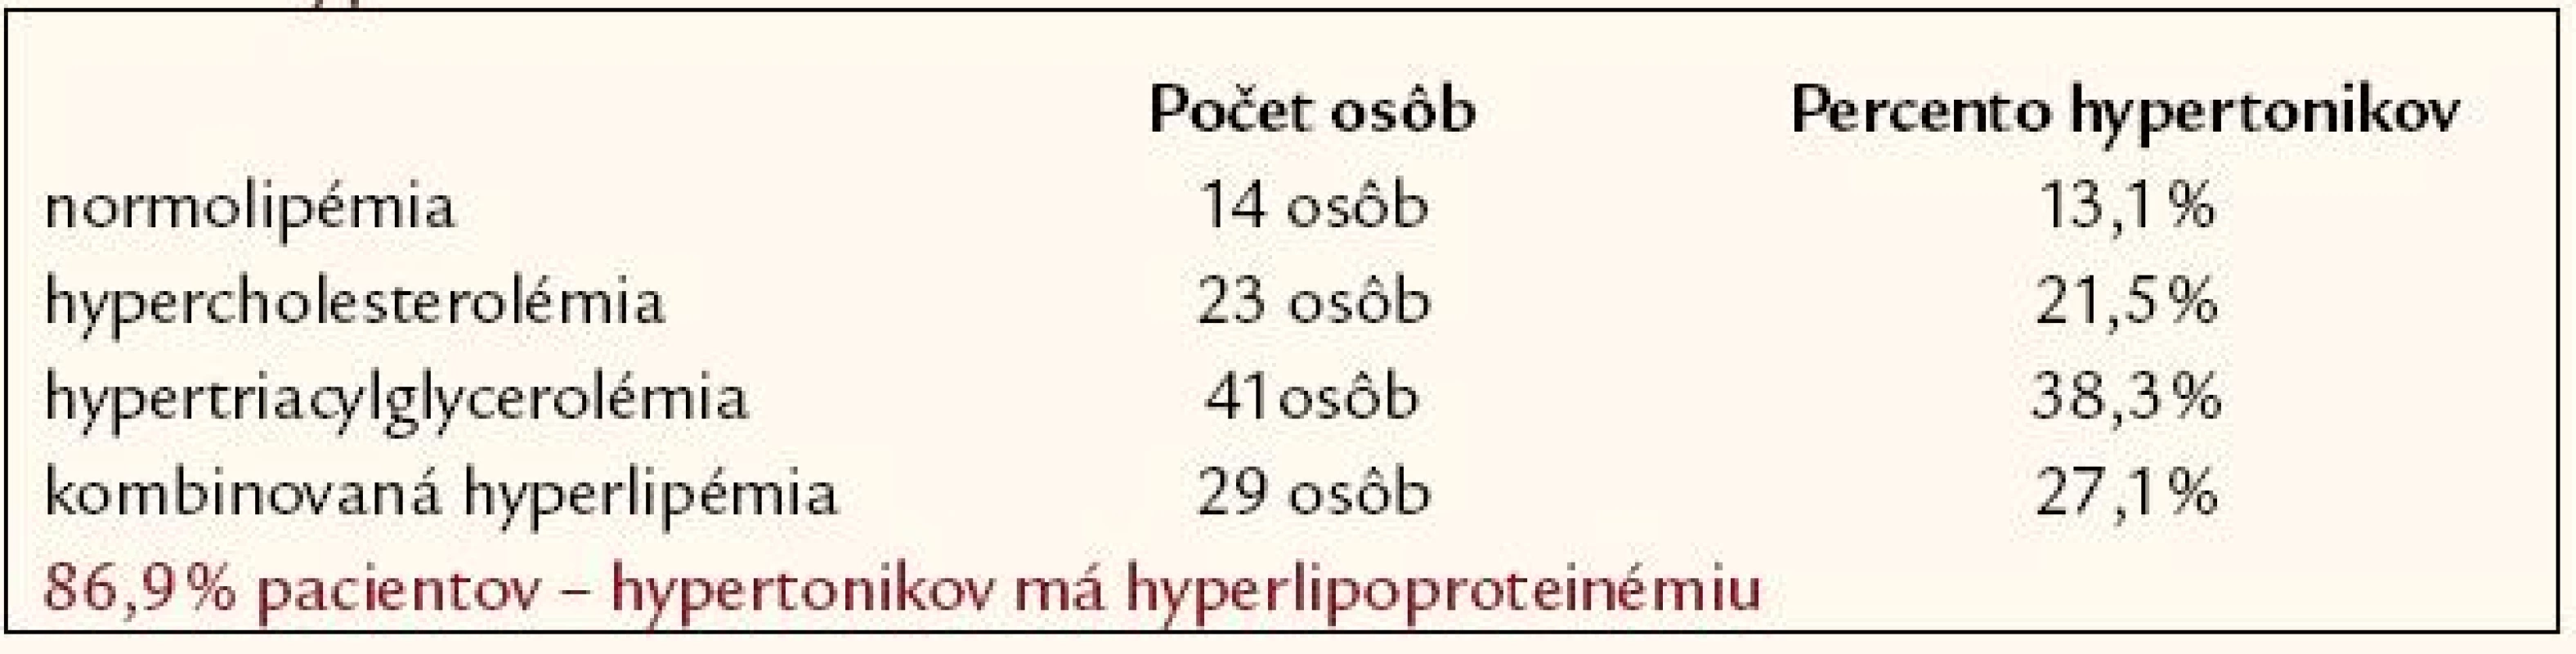 Percentuálne zastúpenie hyperlipoproteinémie u pacientov s artériovou hypertenziou.